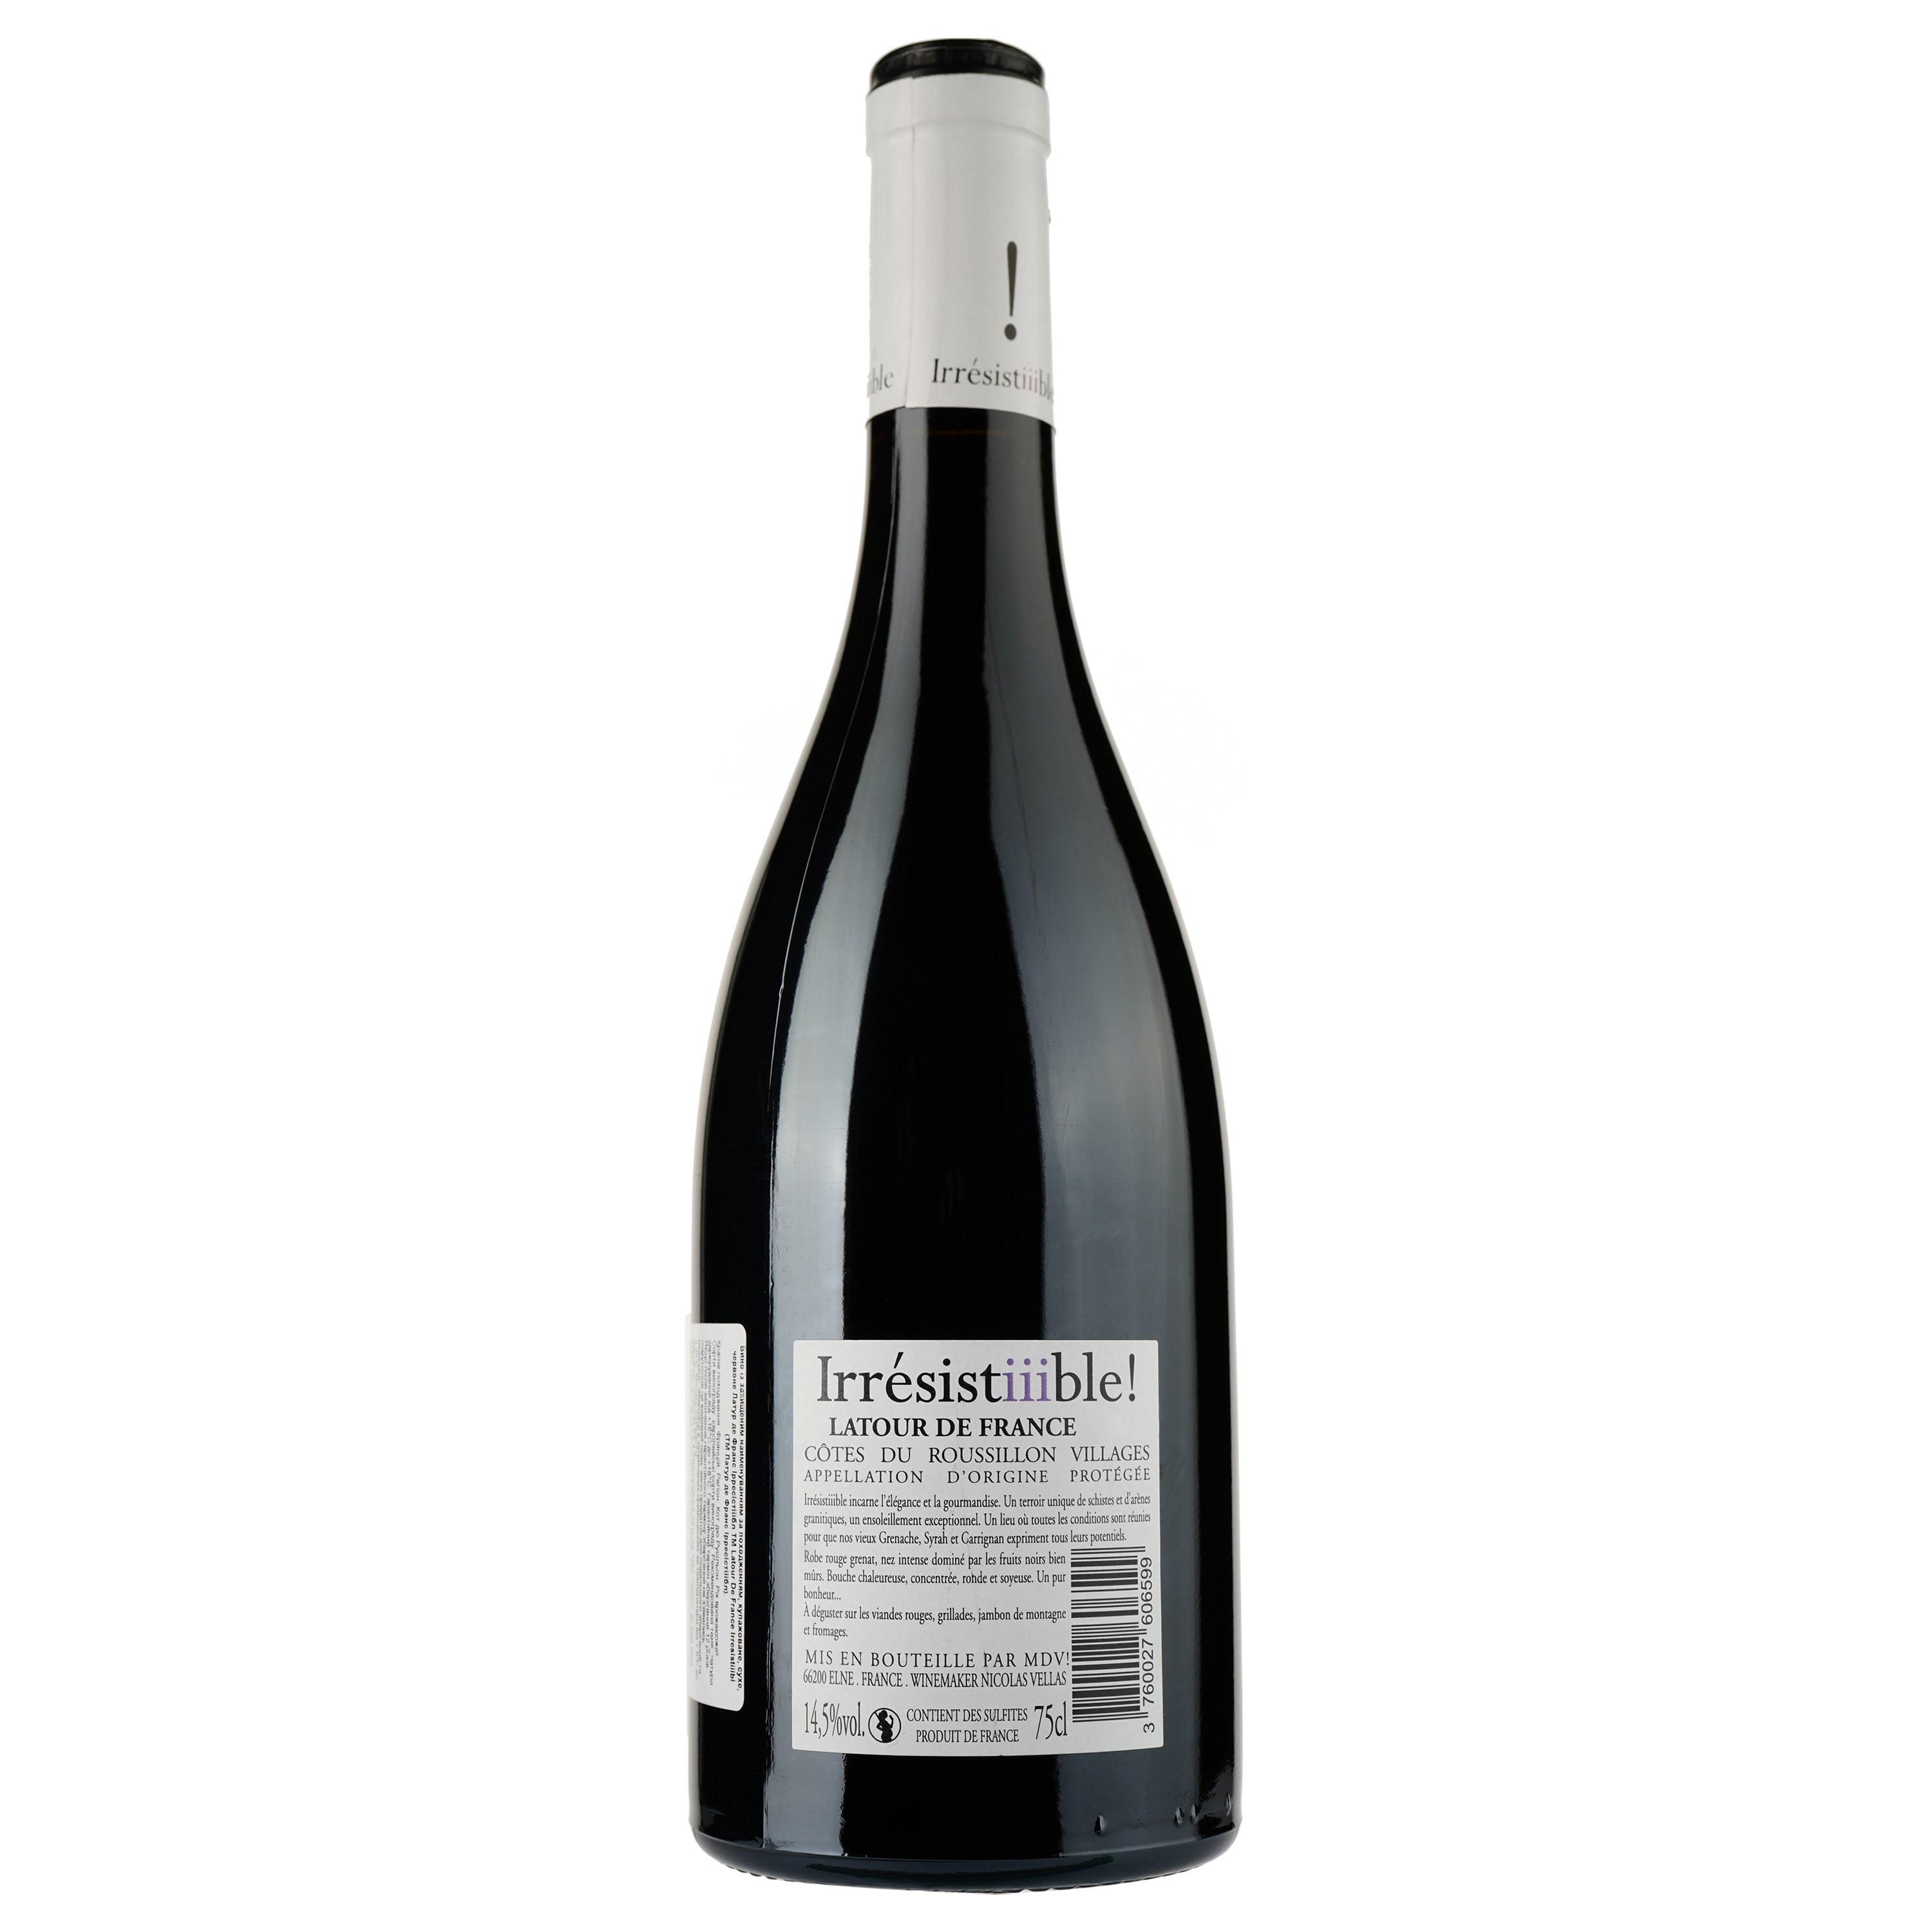 Вино Latour De France Irresistiiible AOP Cotes du Roussillon 2020, червоне, сухе, 0,75 л - фото 2